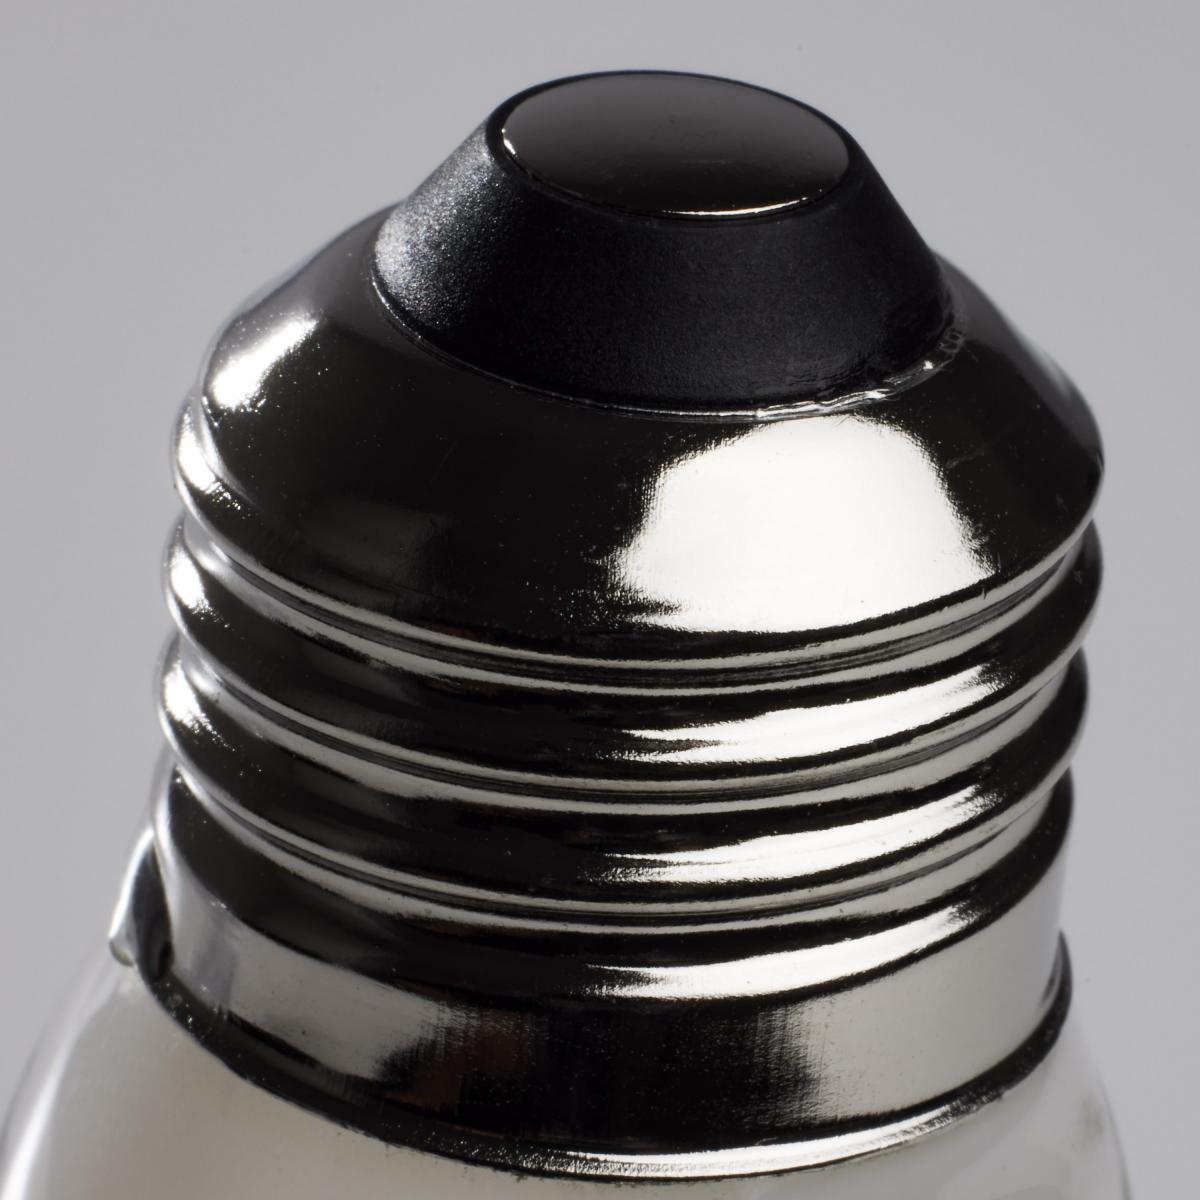 G25 LED Globe Bulb, 6 Watt, 500 Lumens, 2700K, E26 Medium Base, Frosted Finish, Pack Of 2